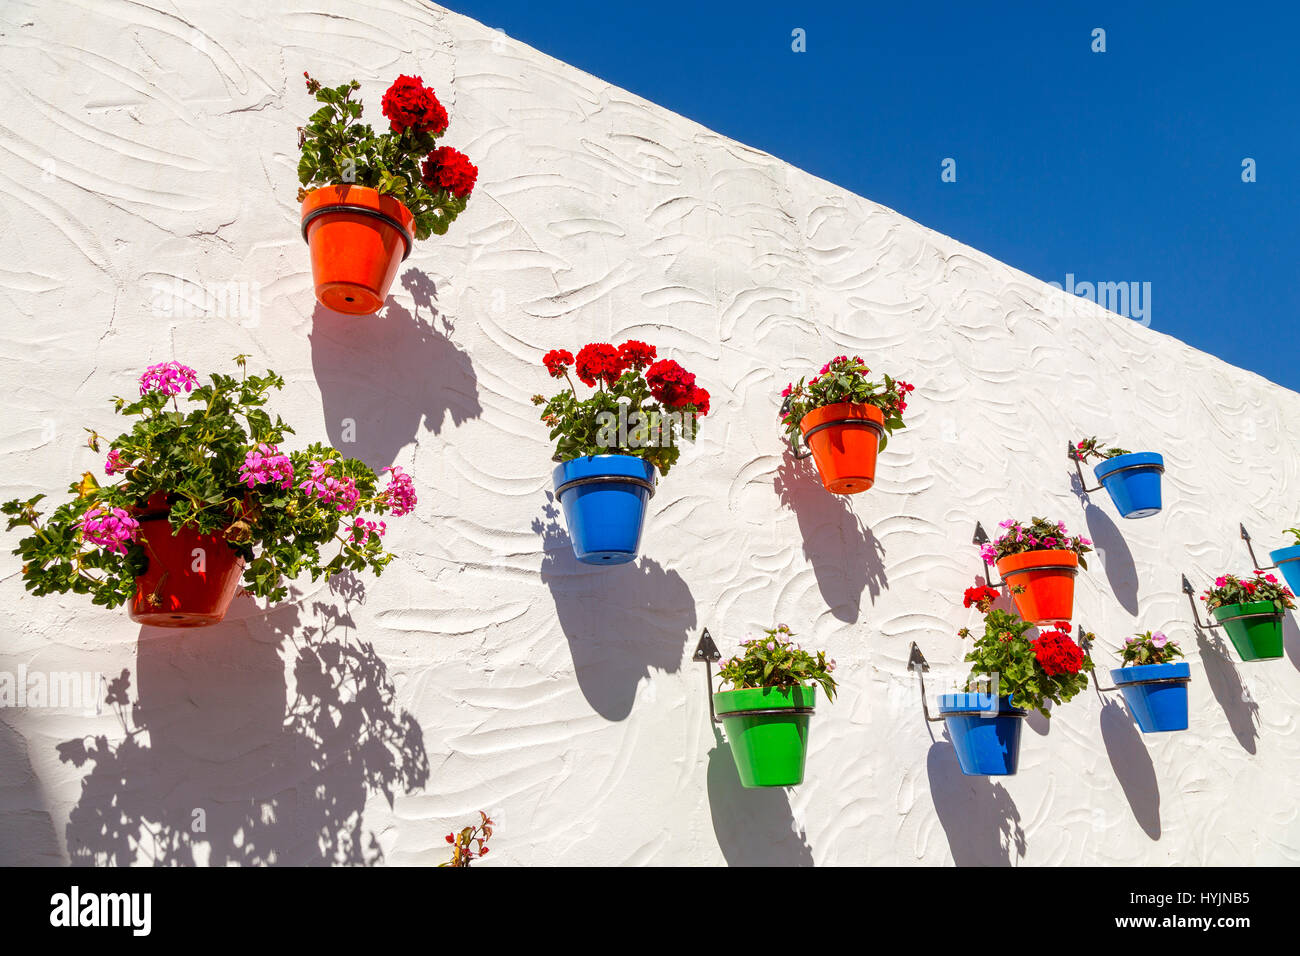 Vaso di fiori e parete bianca, Estepona. Malaga provincia Costa del Sol. Andalusia Spagna meridionale, Europa Foto Stock